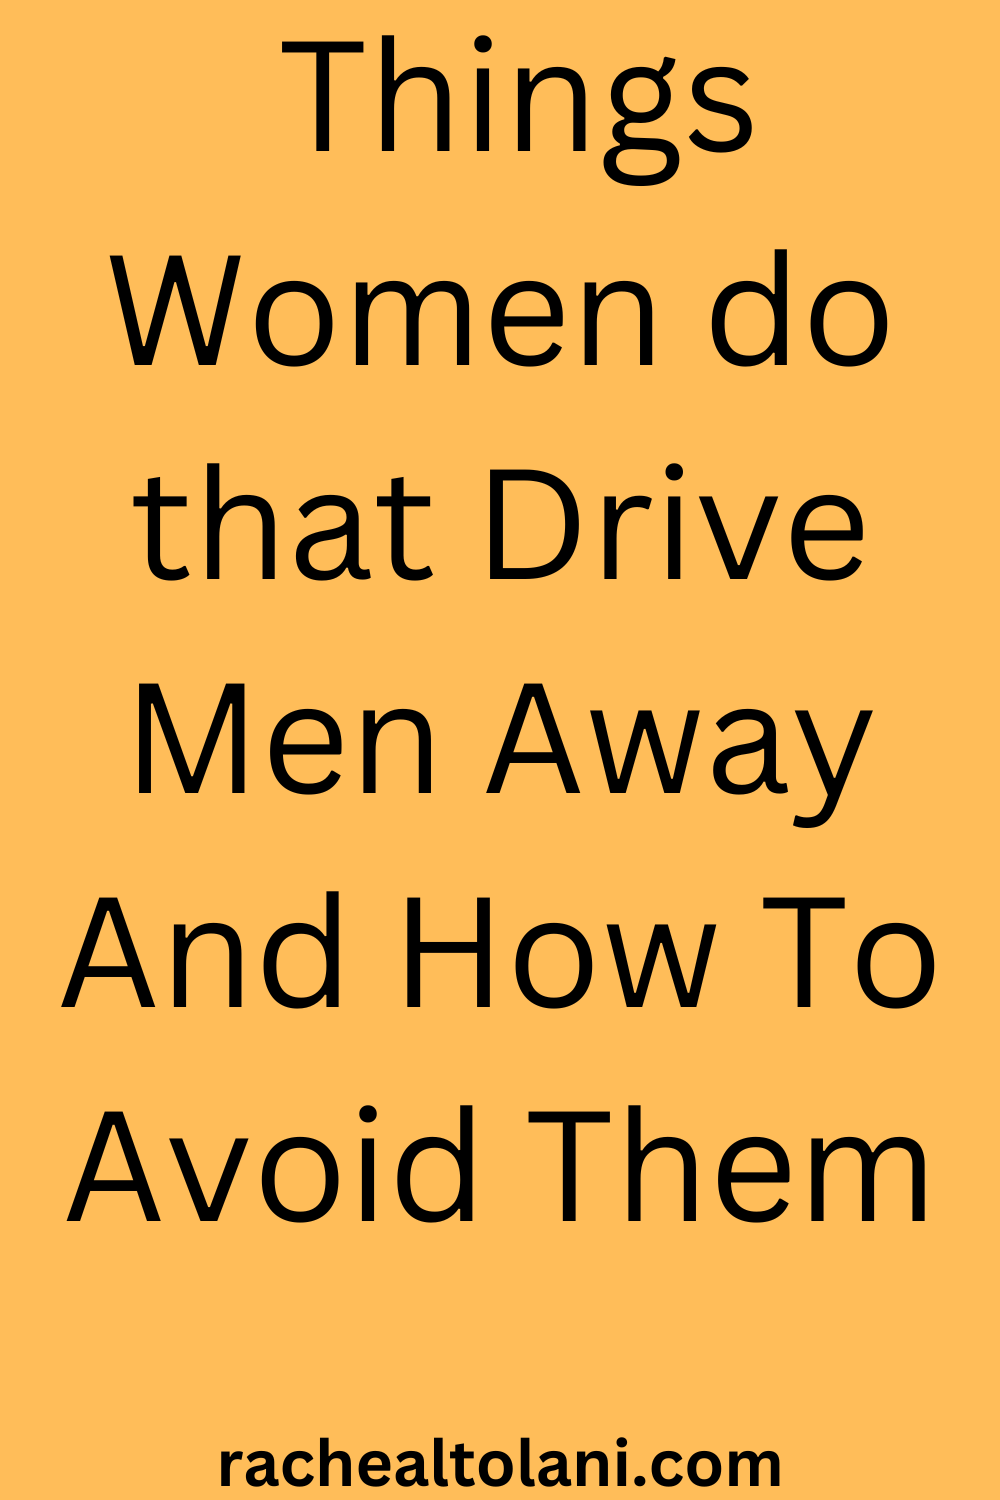 Things women do that drive men away